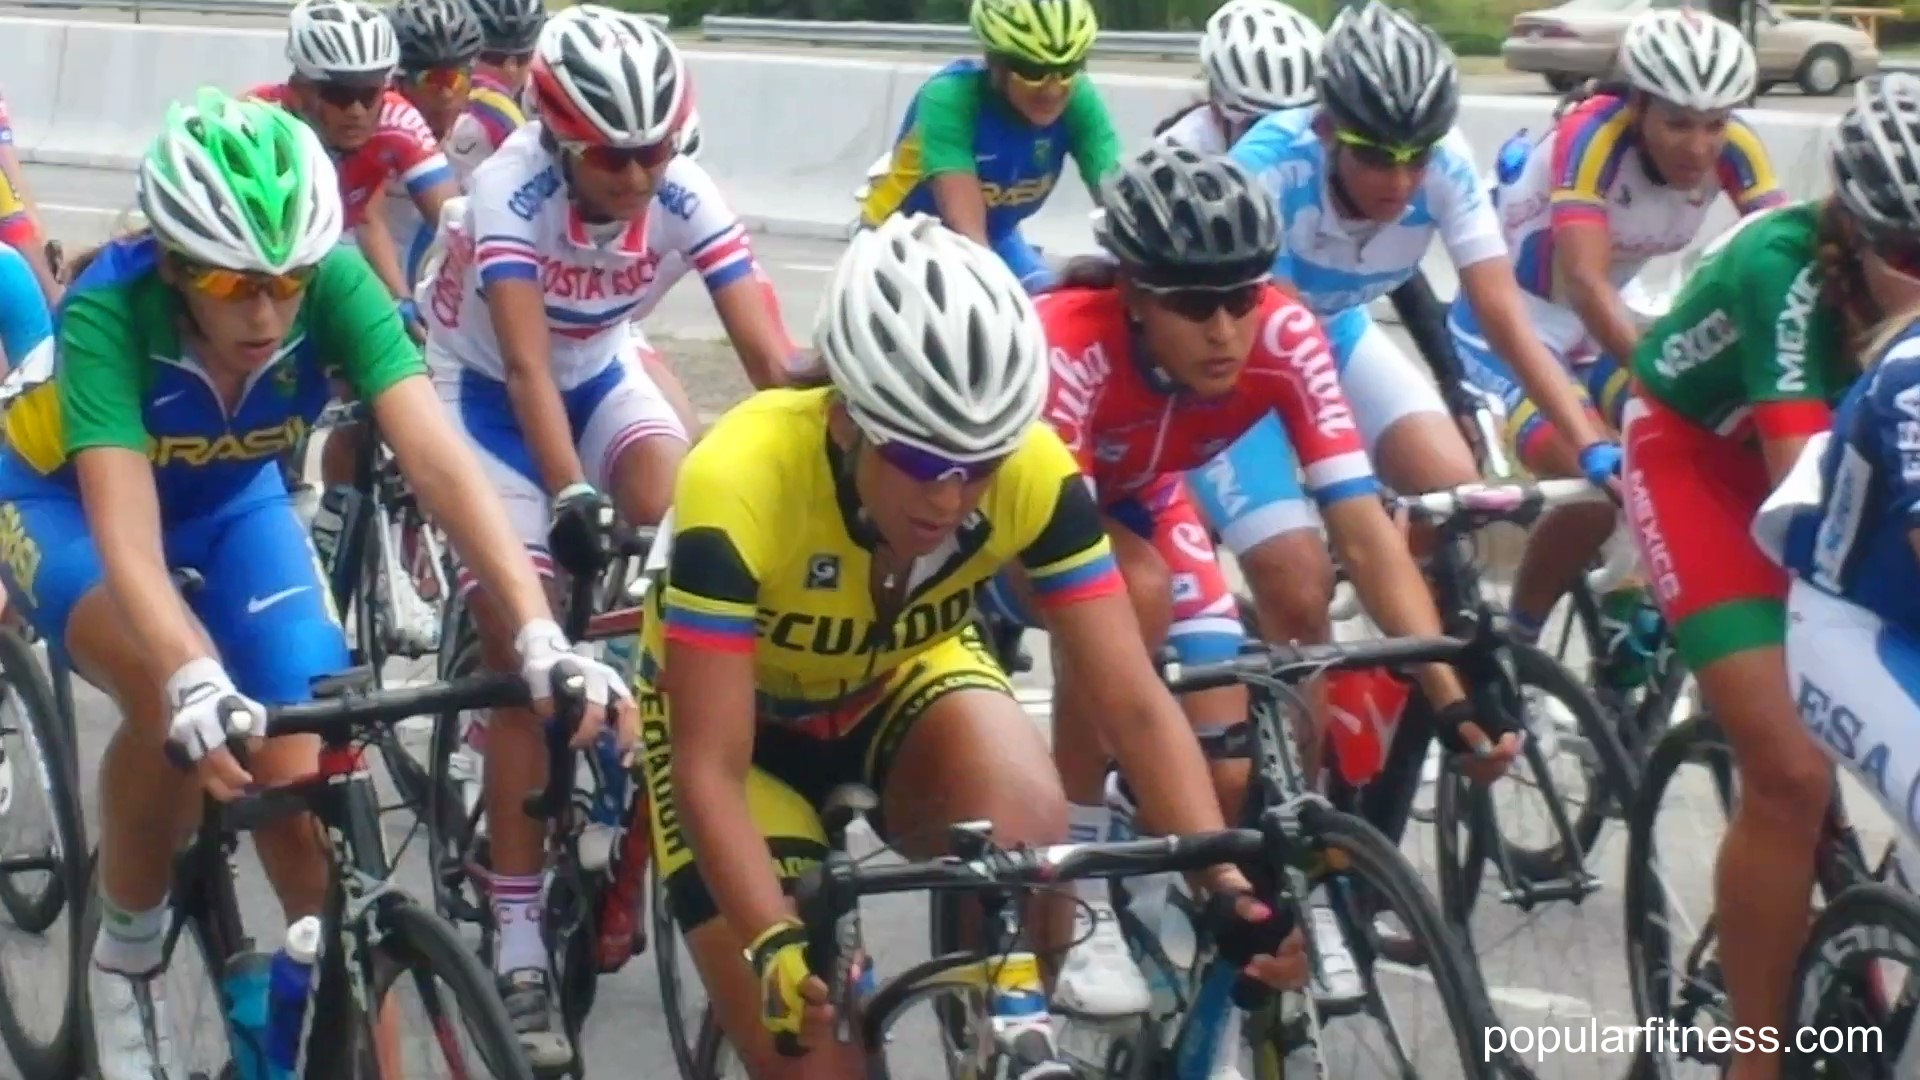 Women's bike race, women cycling in Pan Am Games Toronto - photo by popular fitness